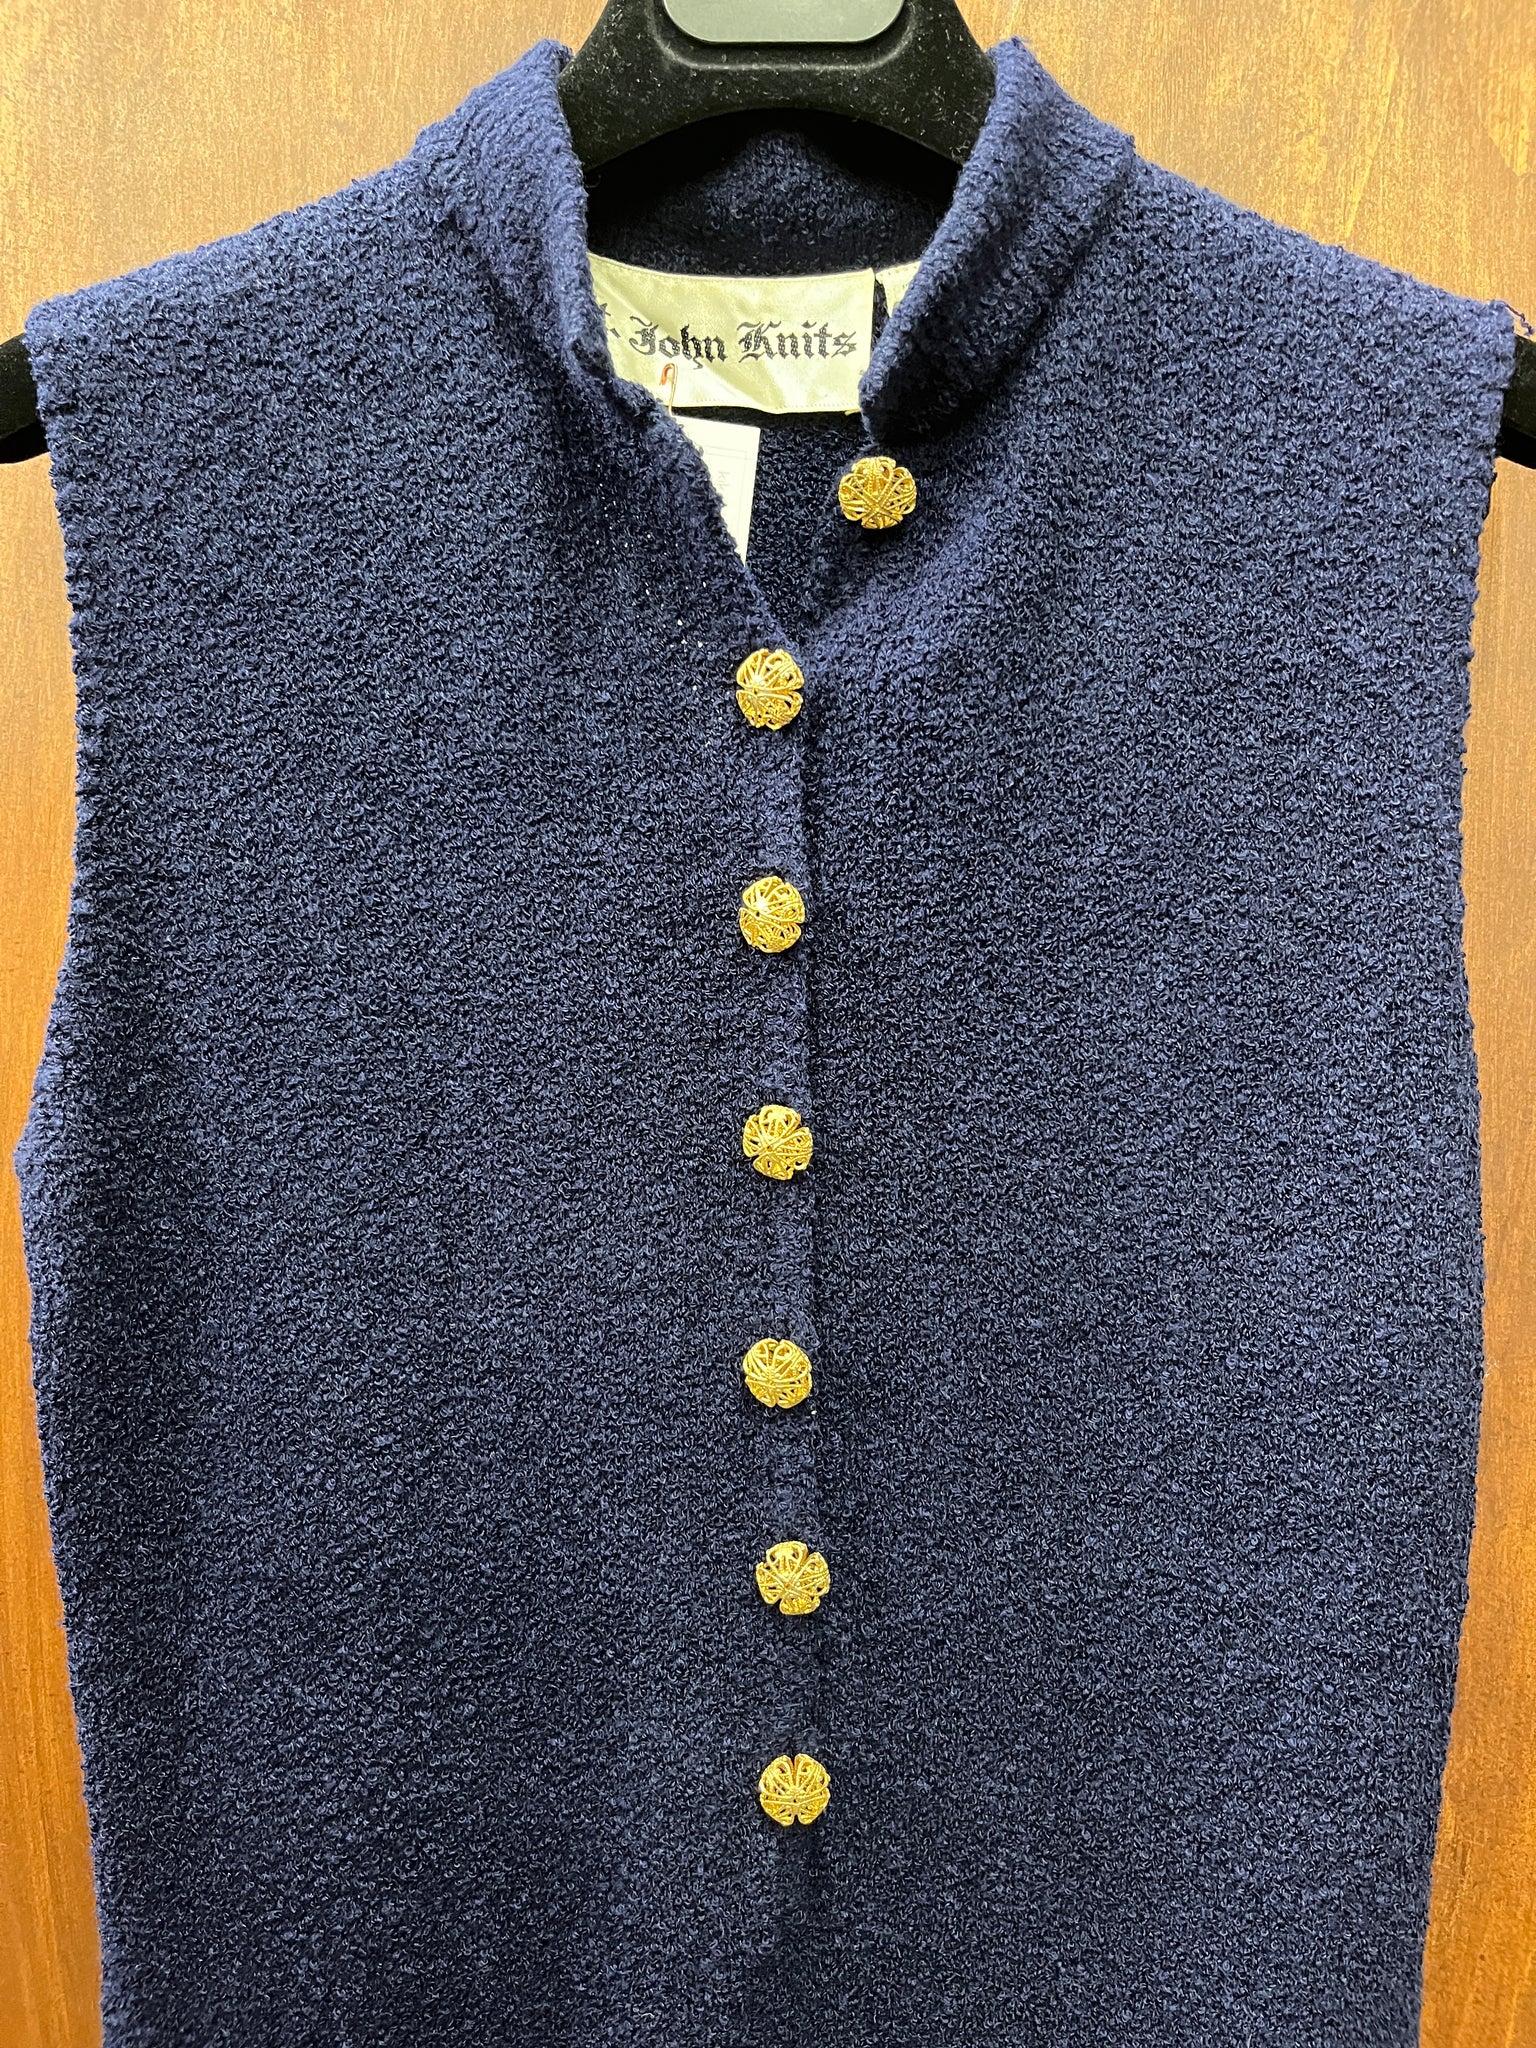 1960S DRESS- St John Knits-navy blue gold buttons slinky sleeveless